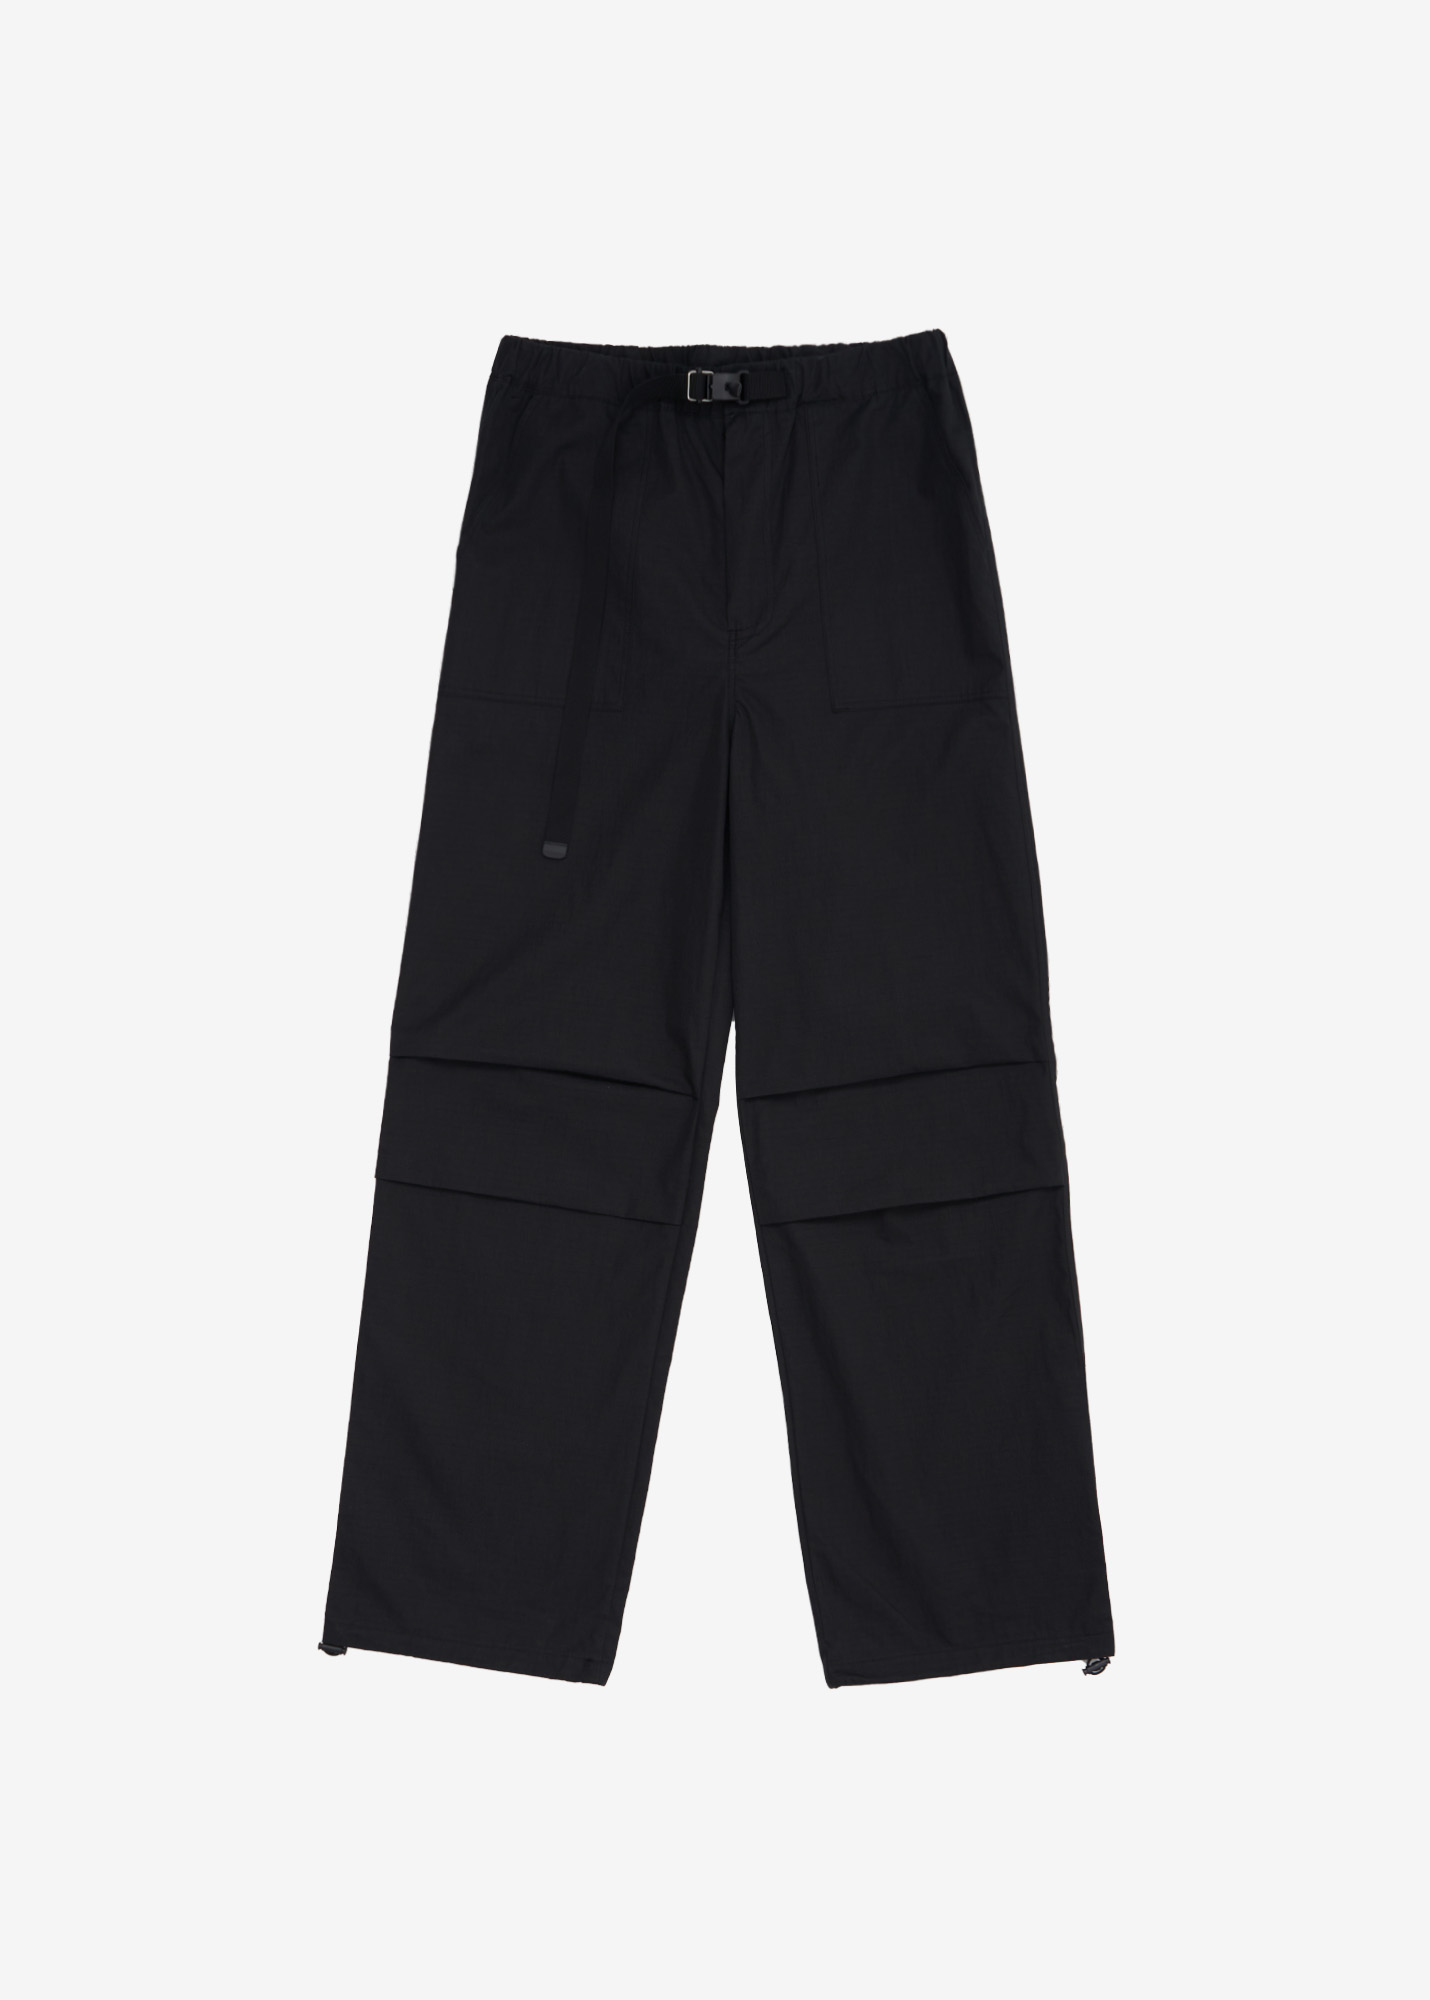 NOS7 Belt Pants - Black